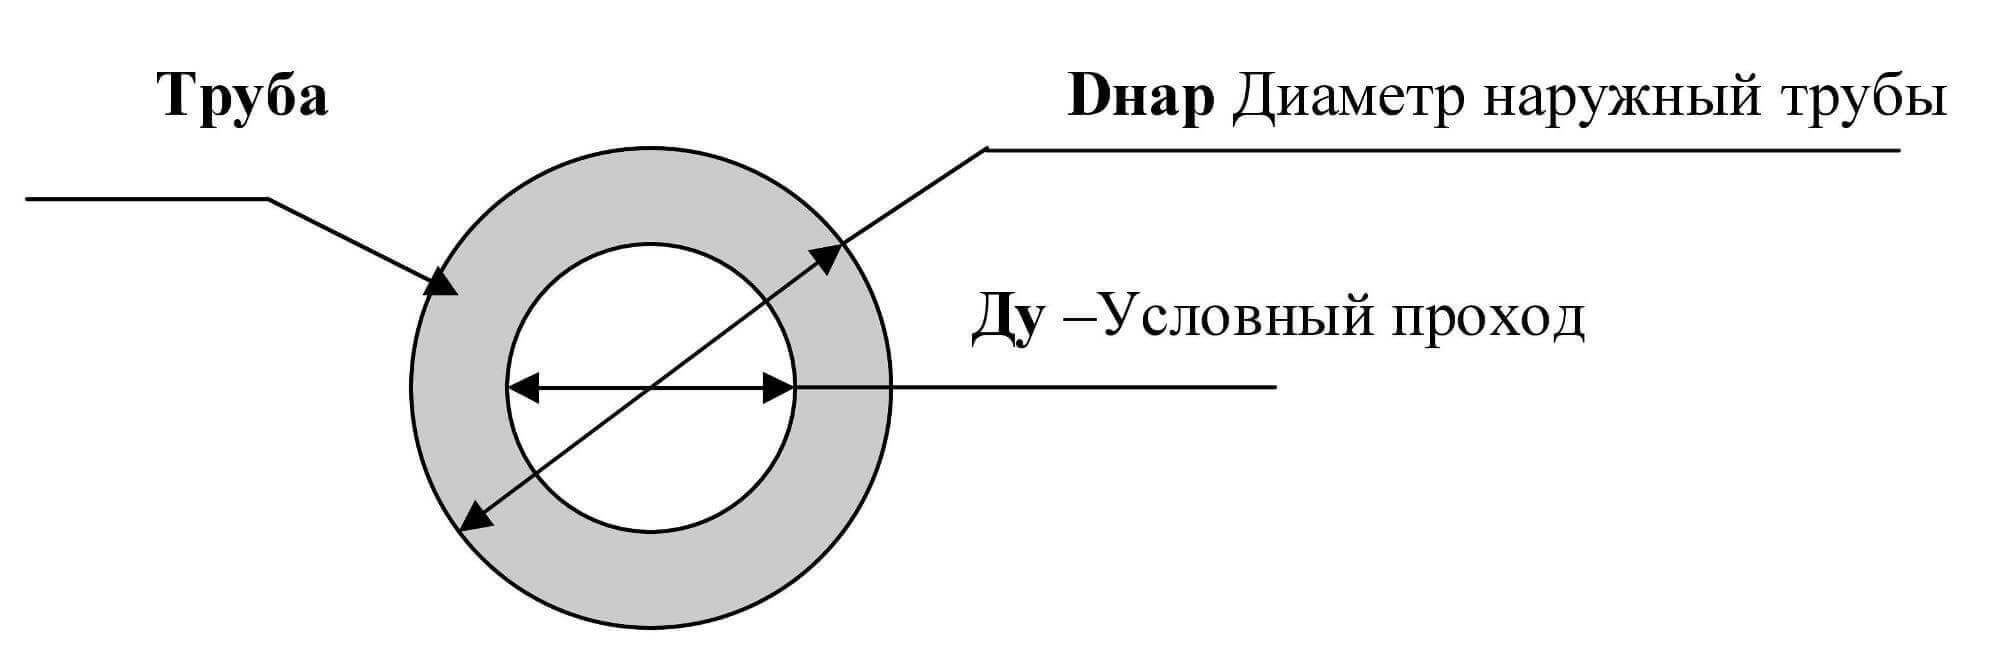 Таблица соответствия Ду, DN, резьб и диаметров стальных и полимерных труб по ГОСТ и DIN / EN